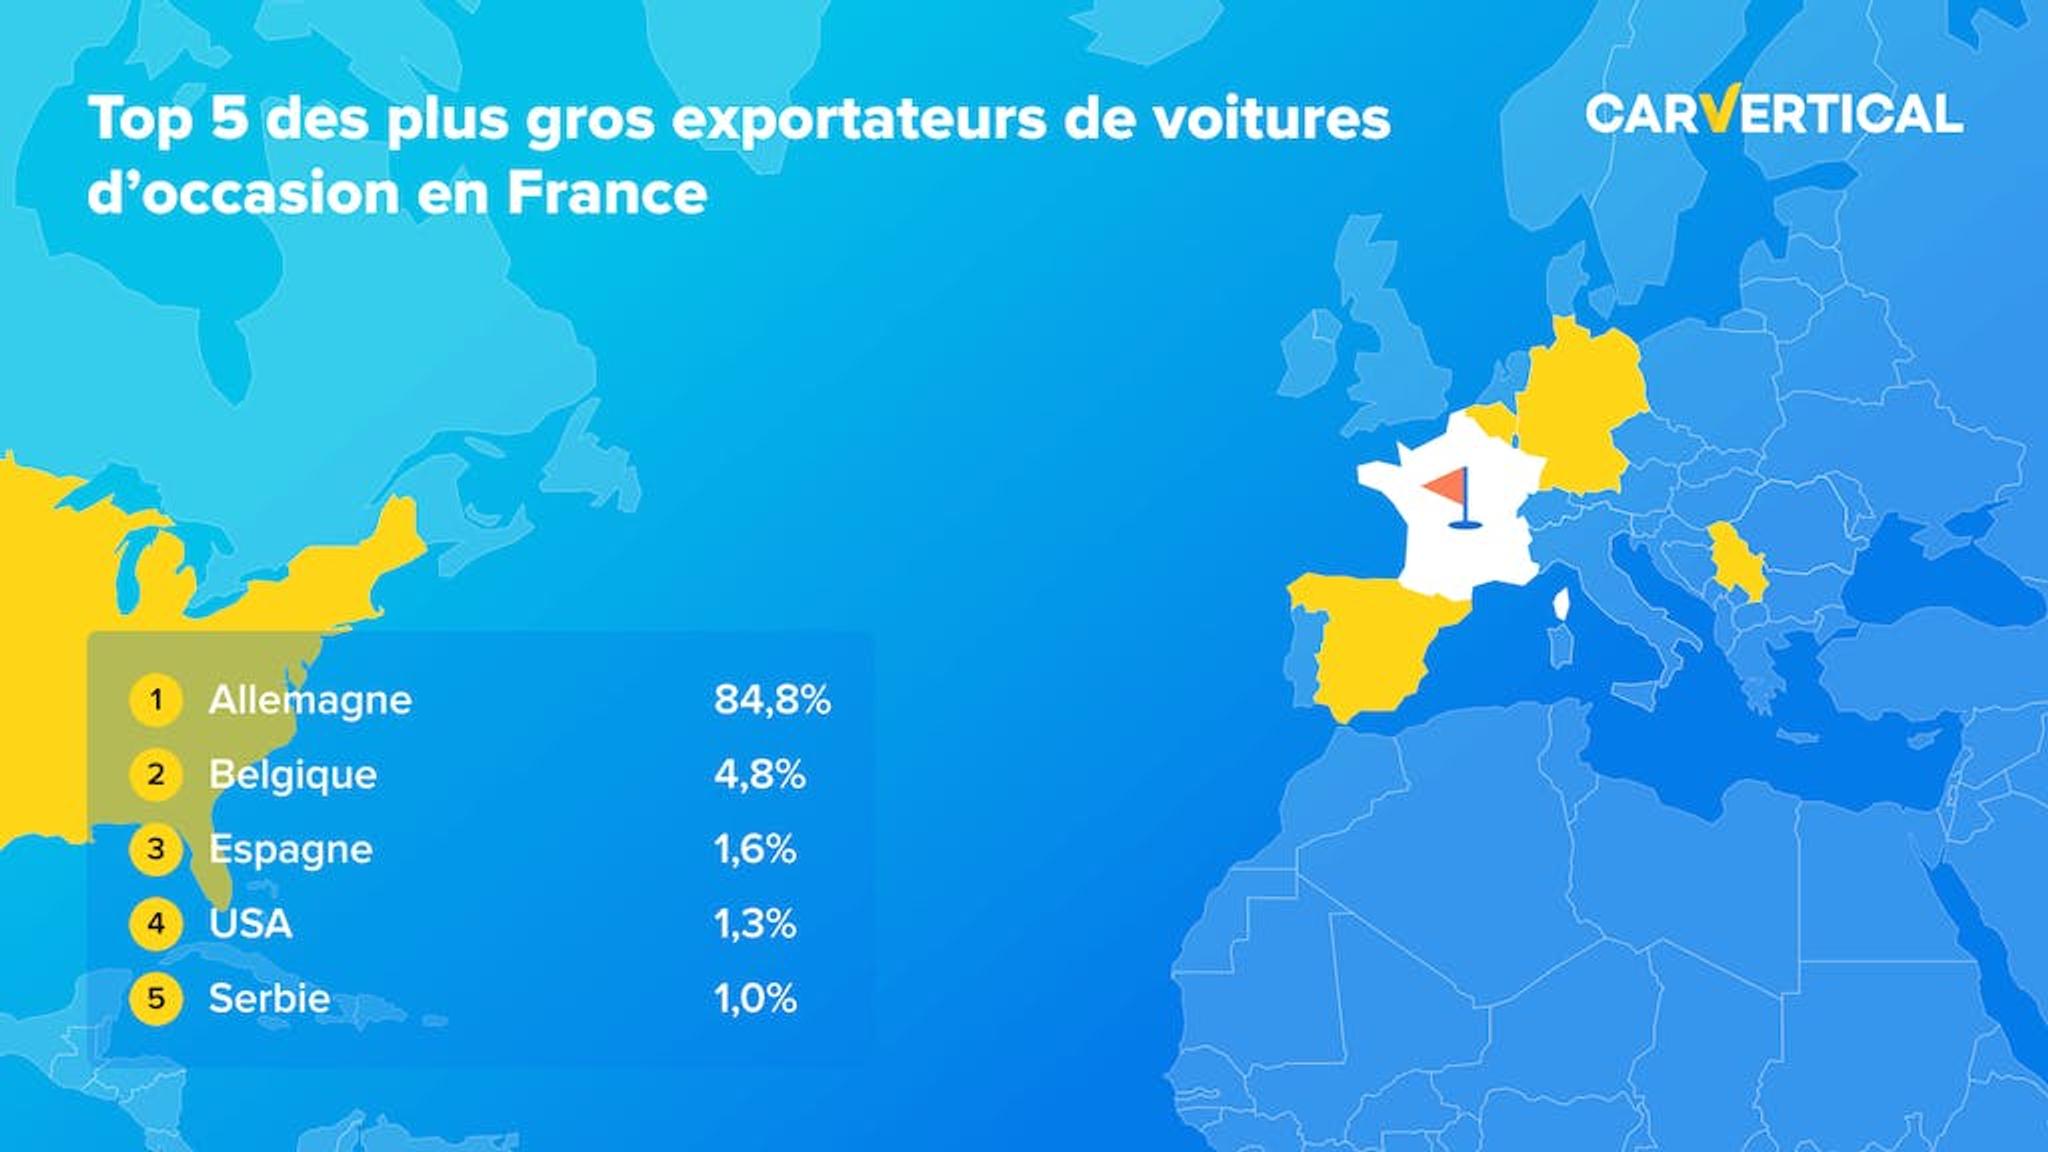 Top 5 des plus gros exportateurs de voitures d'occasion en France